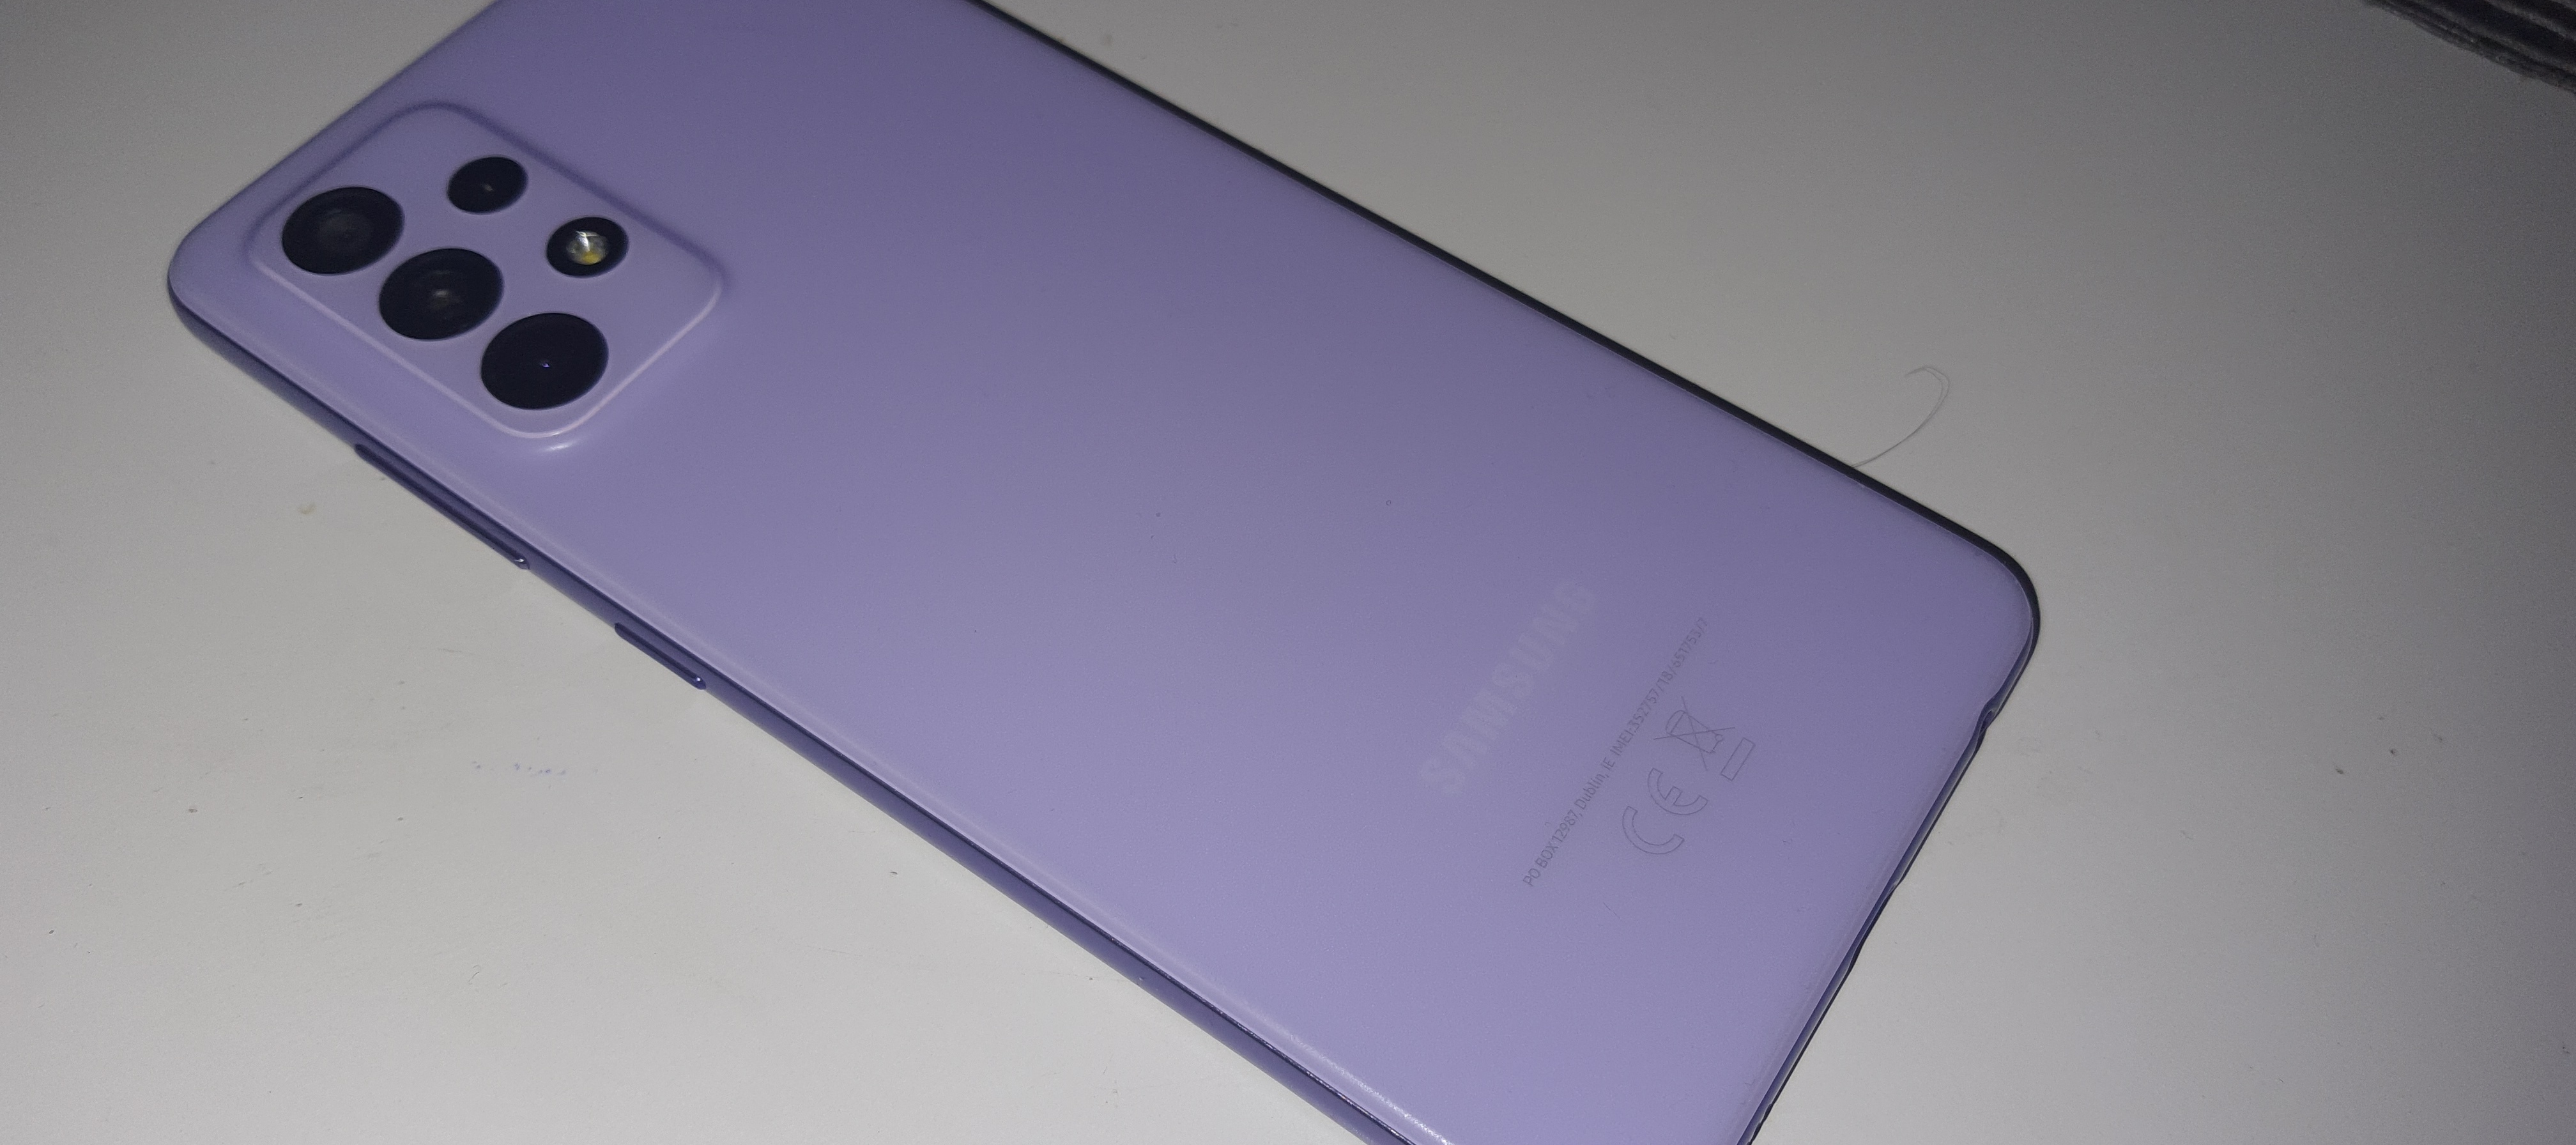 Samsung Galaxy A52 5g - ein kleiner Praxistest